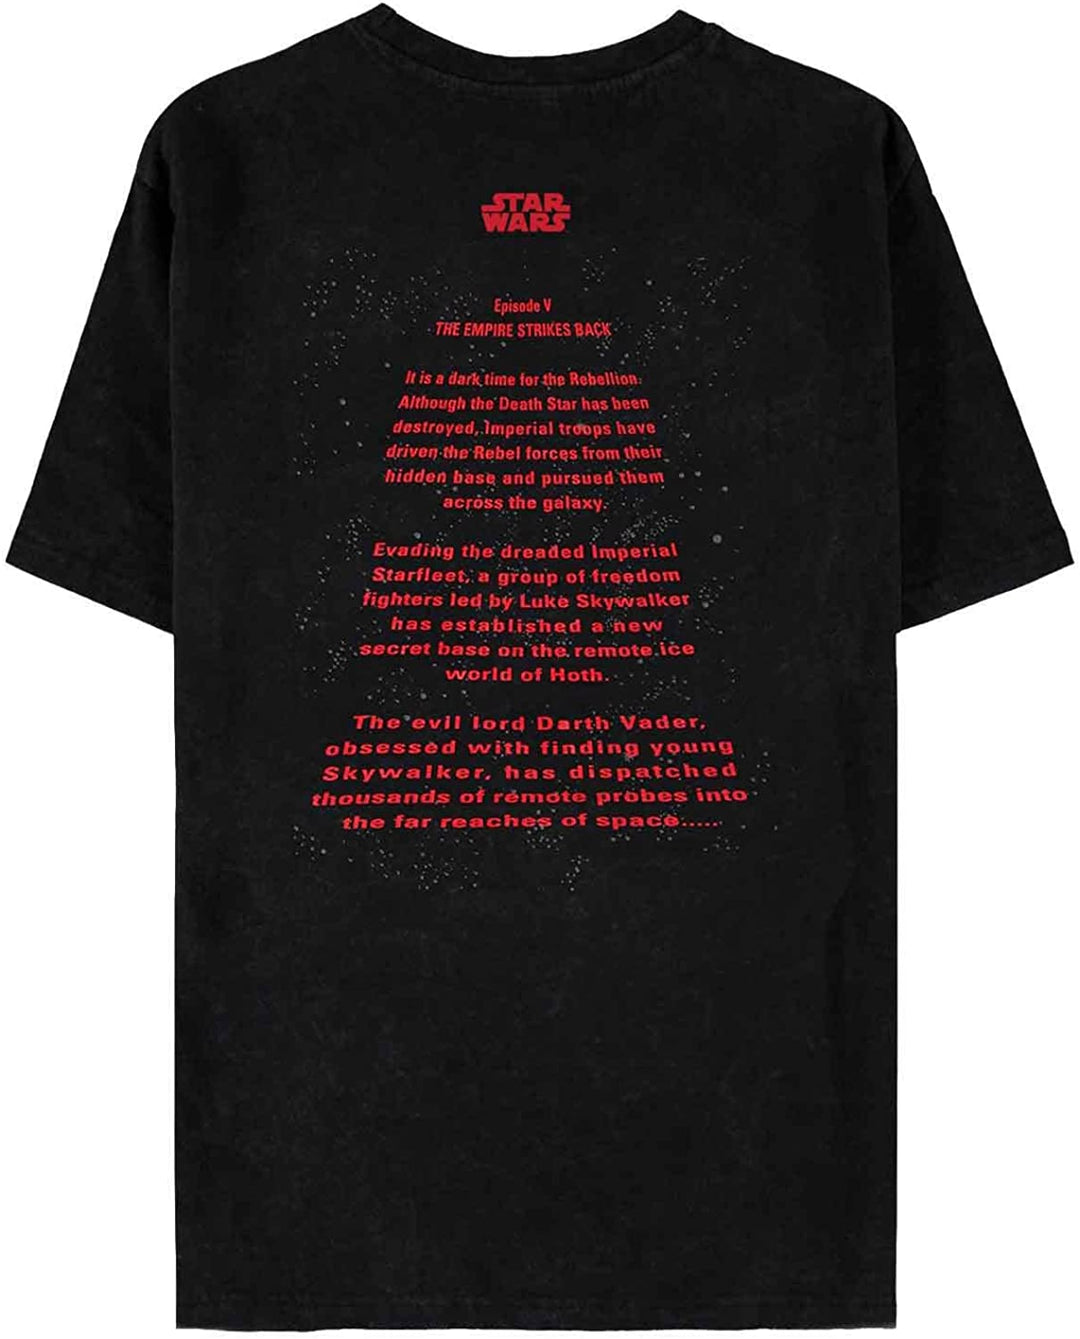 Star Wars Men's Boys' Regular Fit Short-Sleeved T-Shirt, black, XL